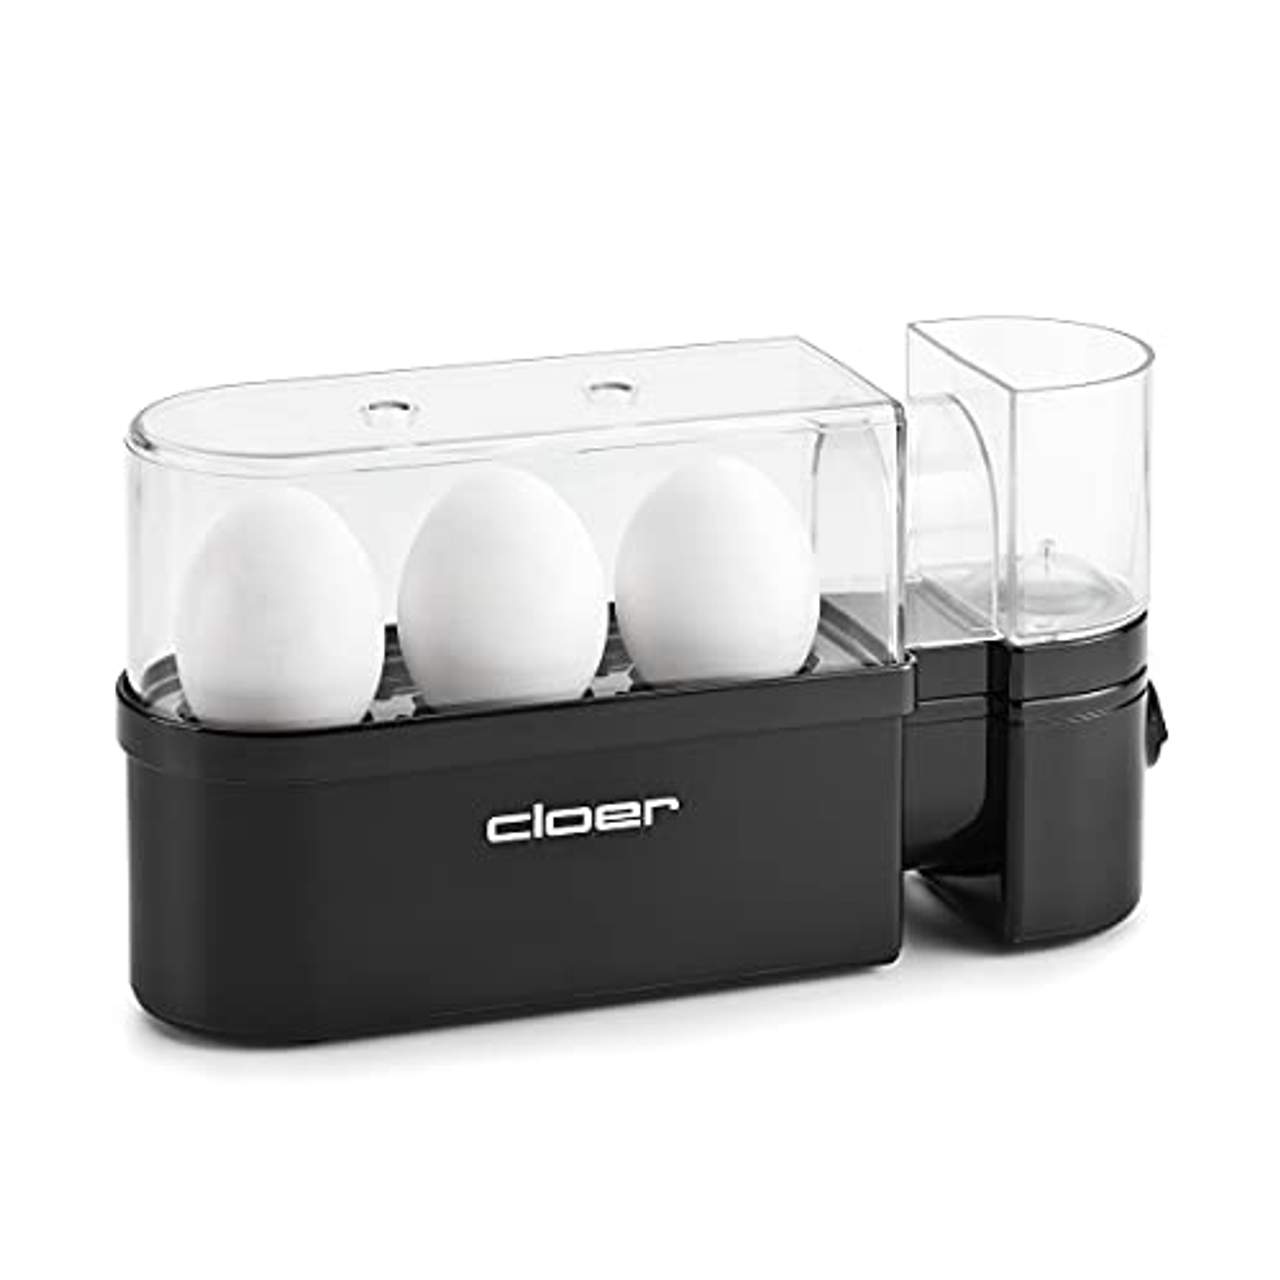 Cloer 6020 Eierkocher mit Servierfunktion